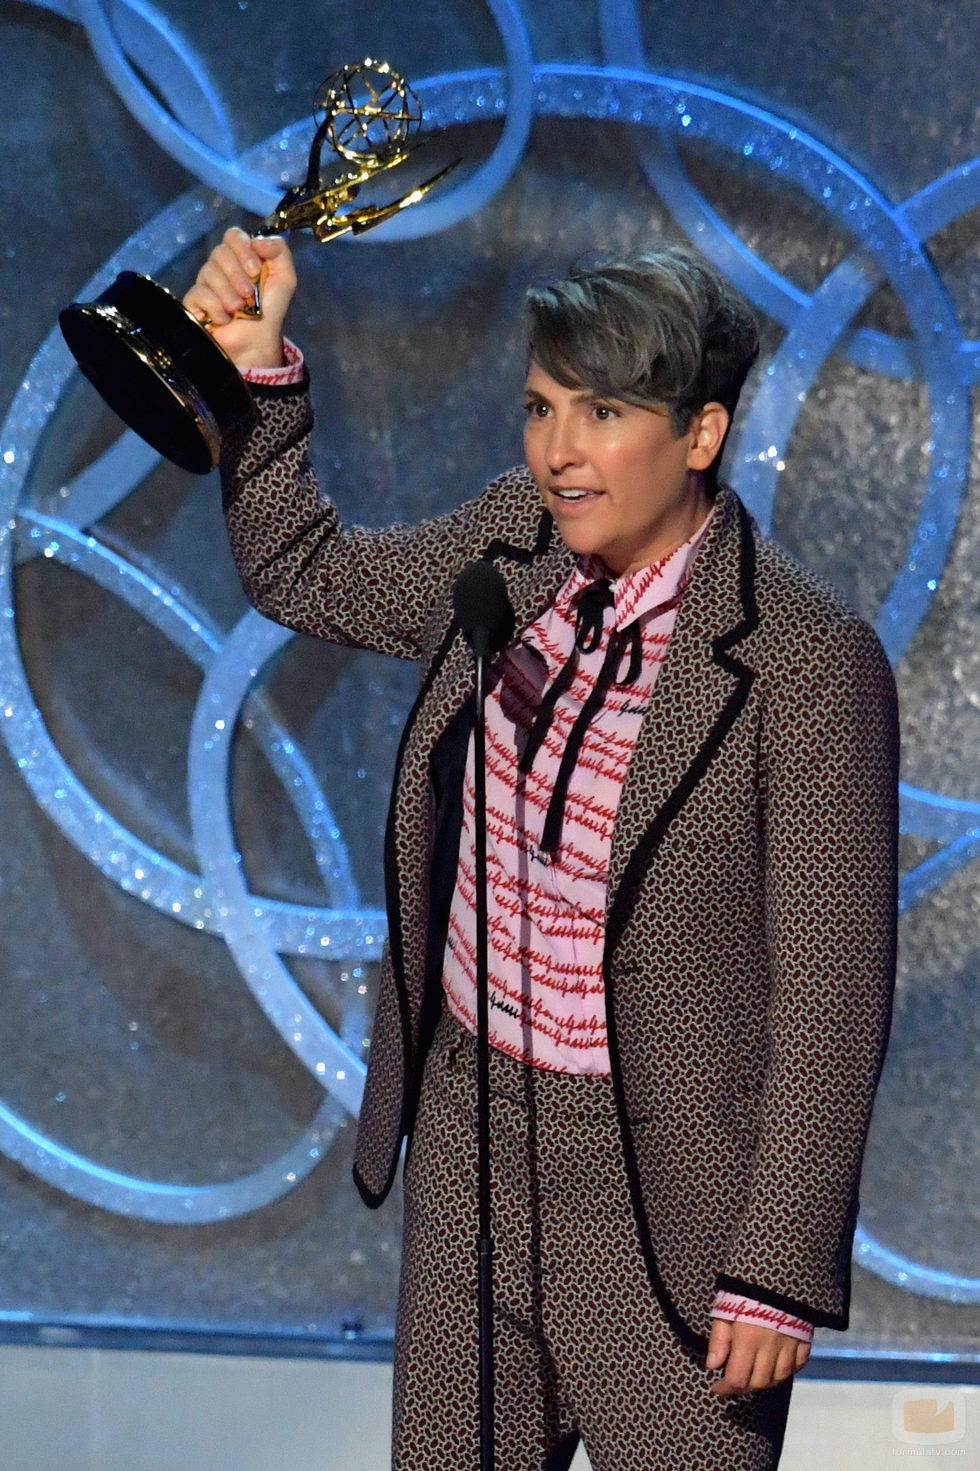 Jill Solloway recogiendo su Premio Emmy 2016